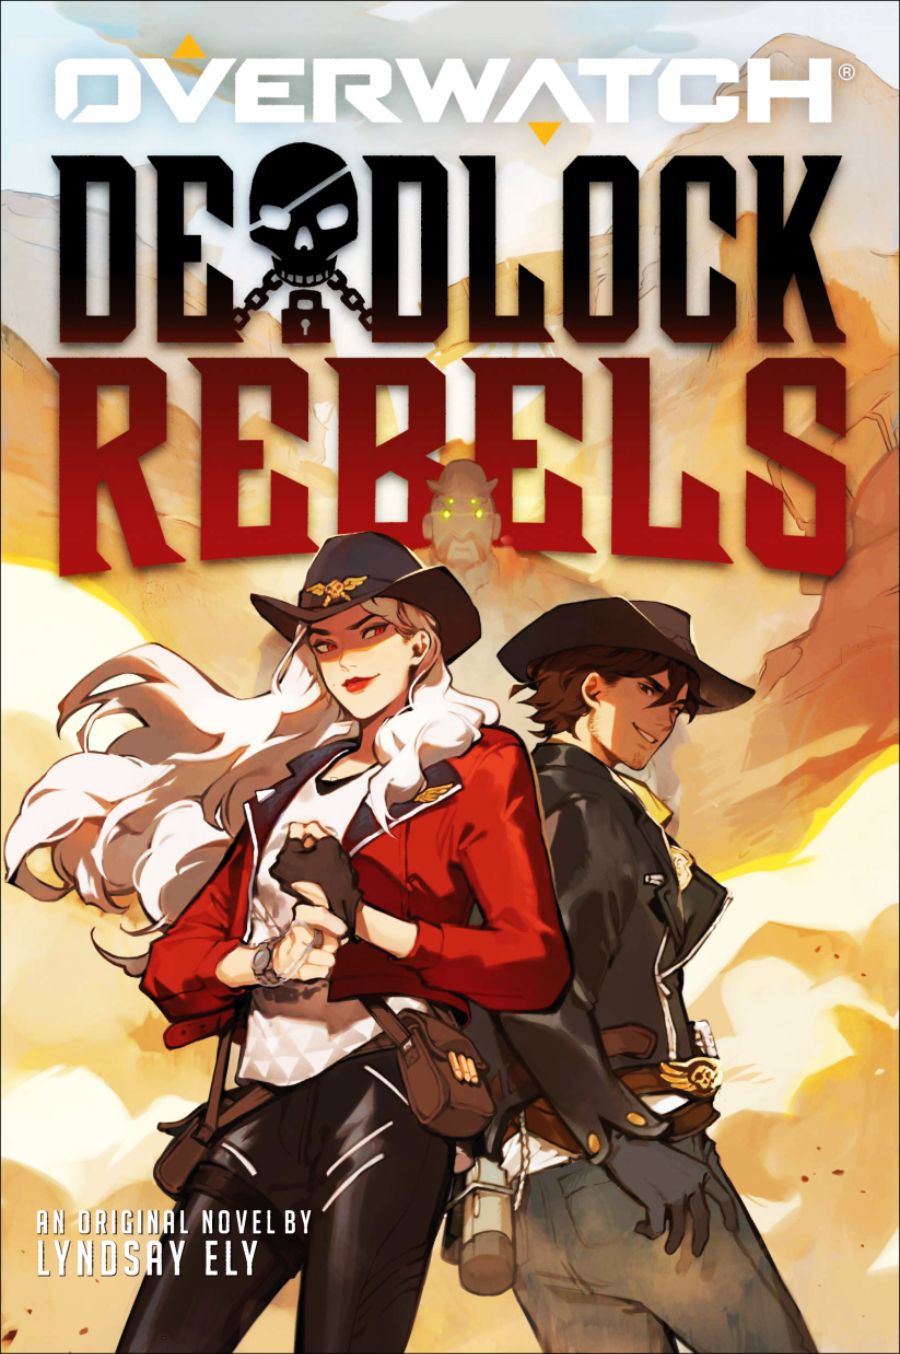 Deadlock-Rebels.png